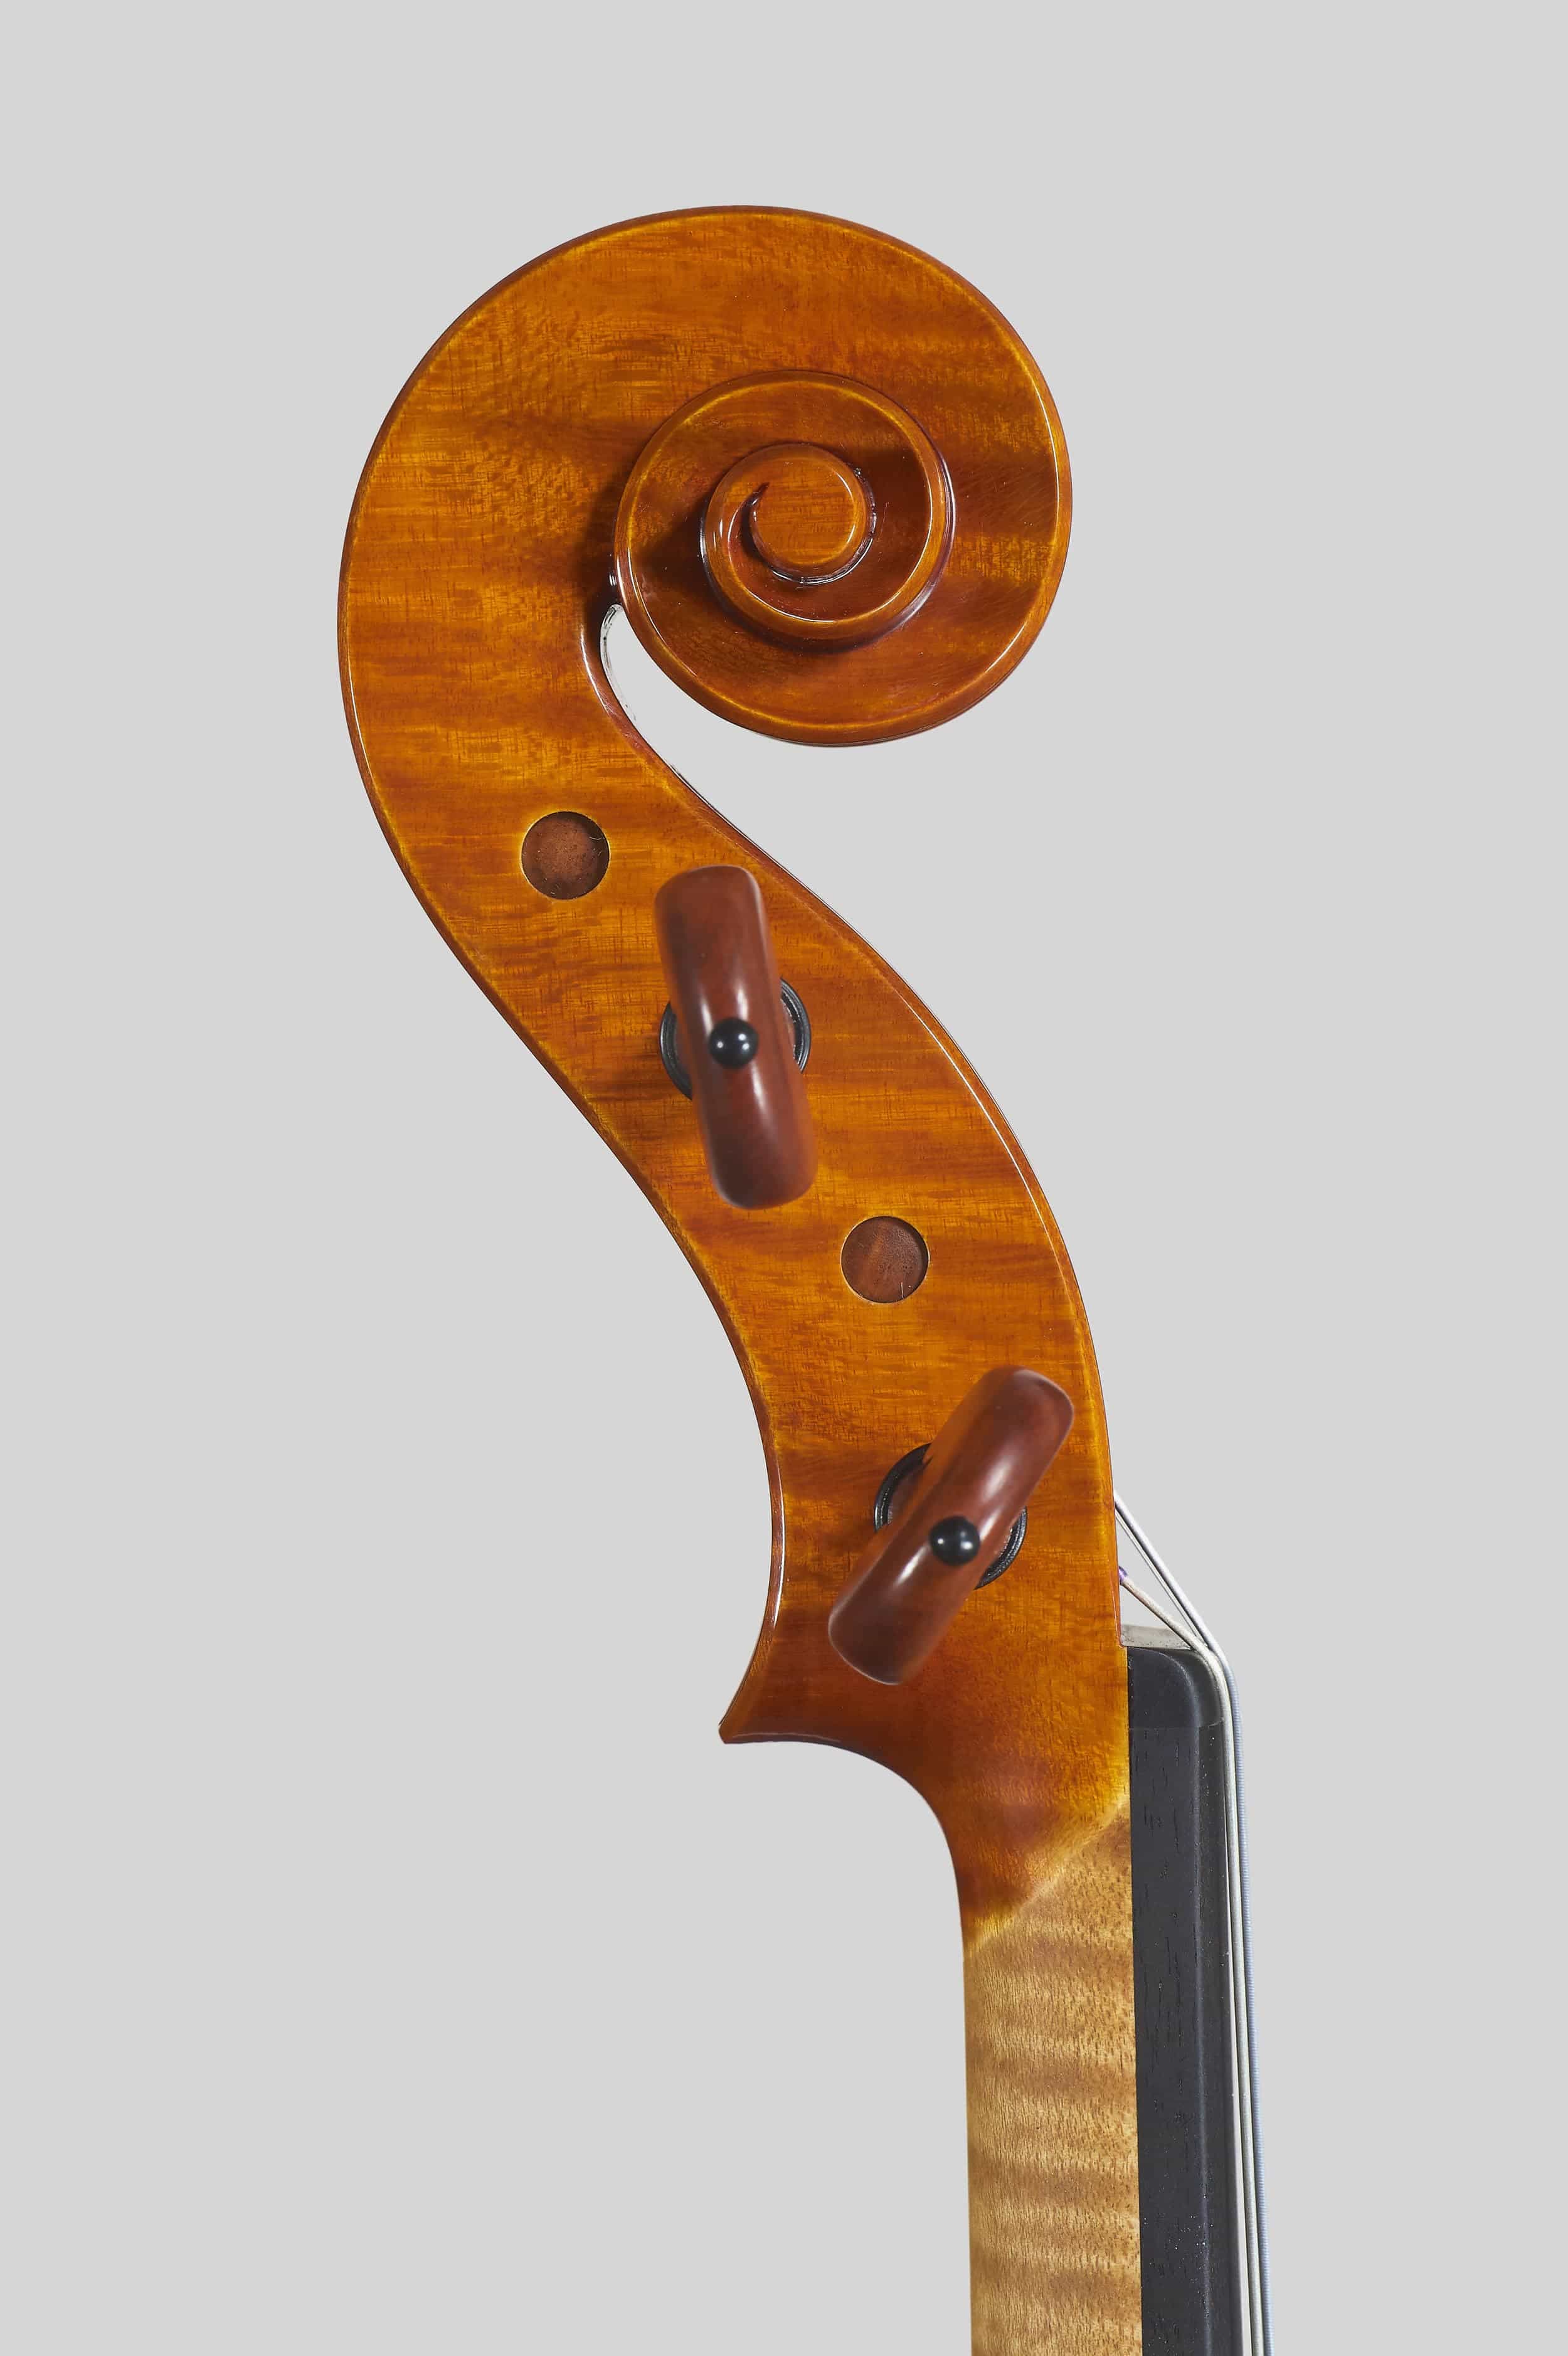 Anno 2017 - Violino modello stile A. Stradivari “Viotti” 1709 - Testa sinistra